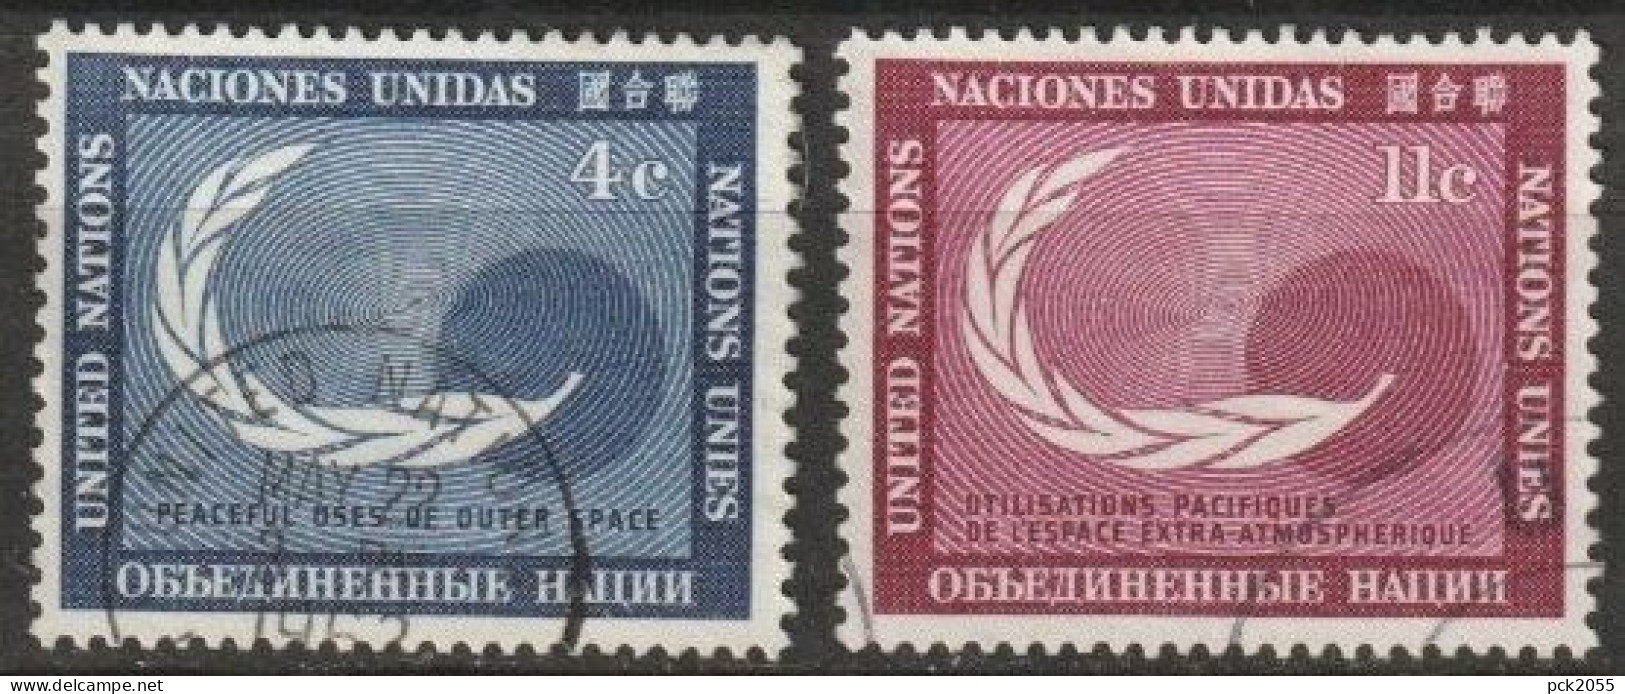 UNO New York 1962 Mi-Nr.122 - 123 O Gestempelt Friedliche Nutzung Des Weltraums ( 4559) Günstiger Versand - Used Stamps